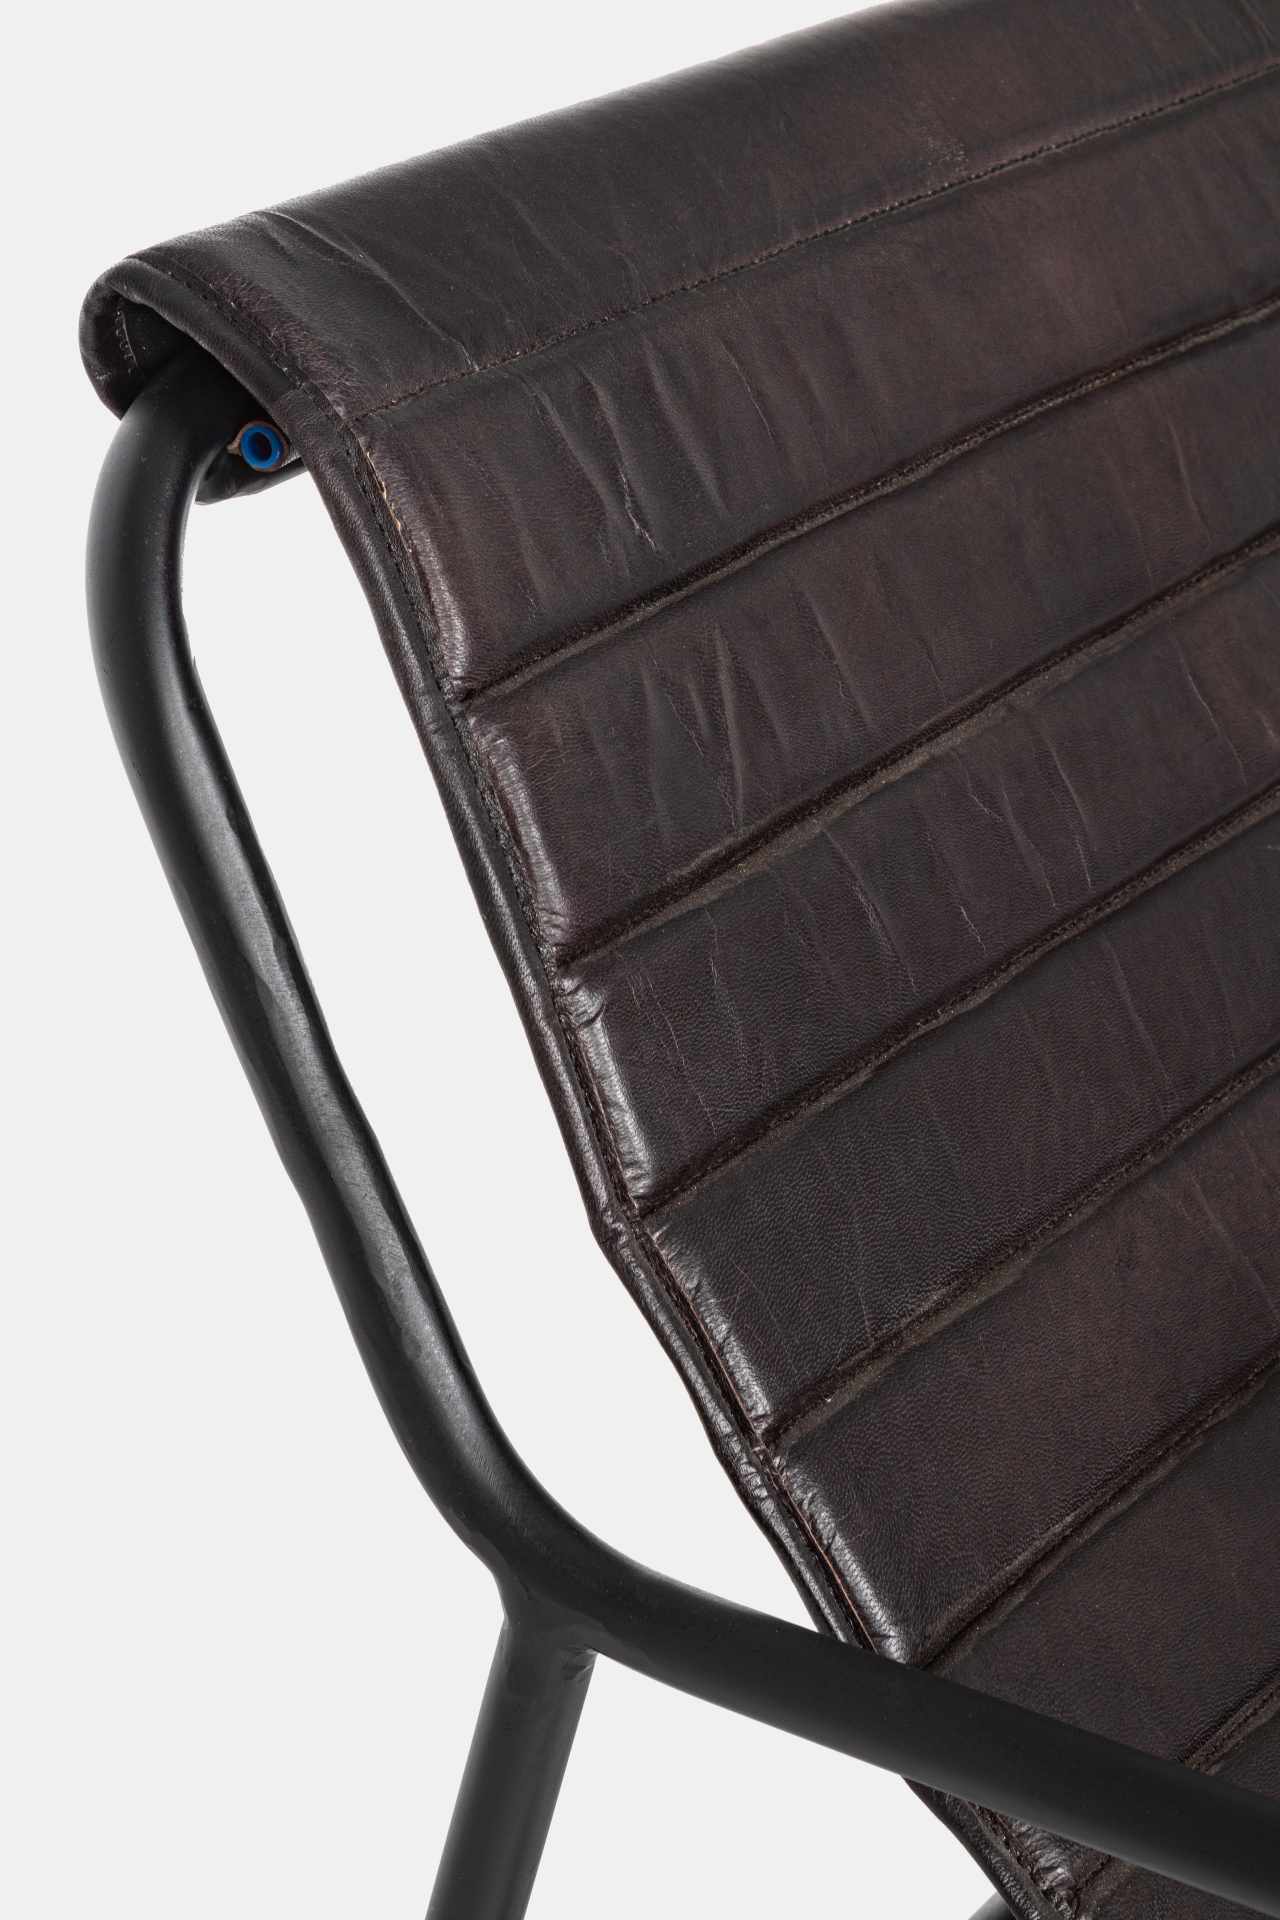 Der Sessel Karisma überzeugt mit seinem klassischen Design. Gefertigt wurde er aus Leder, welches einen schwarzen Farbton besitzt. Das Gestell ist aus Metall und hat eine schwarze Farbe. Der Sessel besitzt eine Sitzhöhe von 44 cm. Die Breite beträgt 59 cm